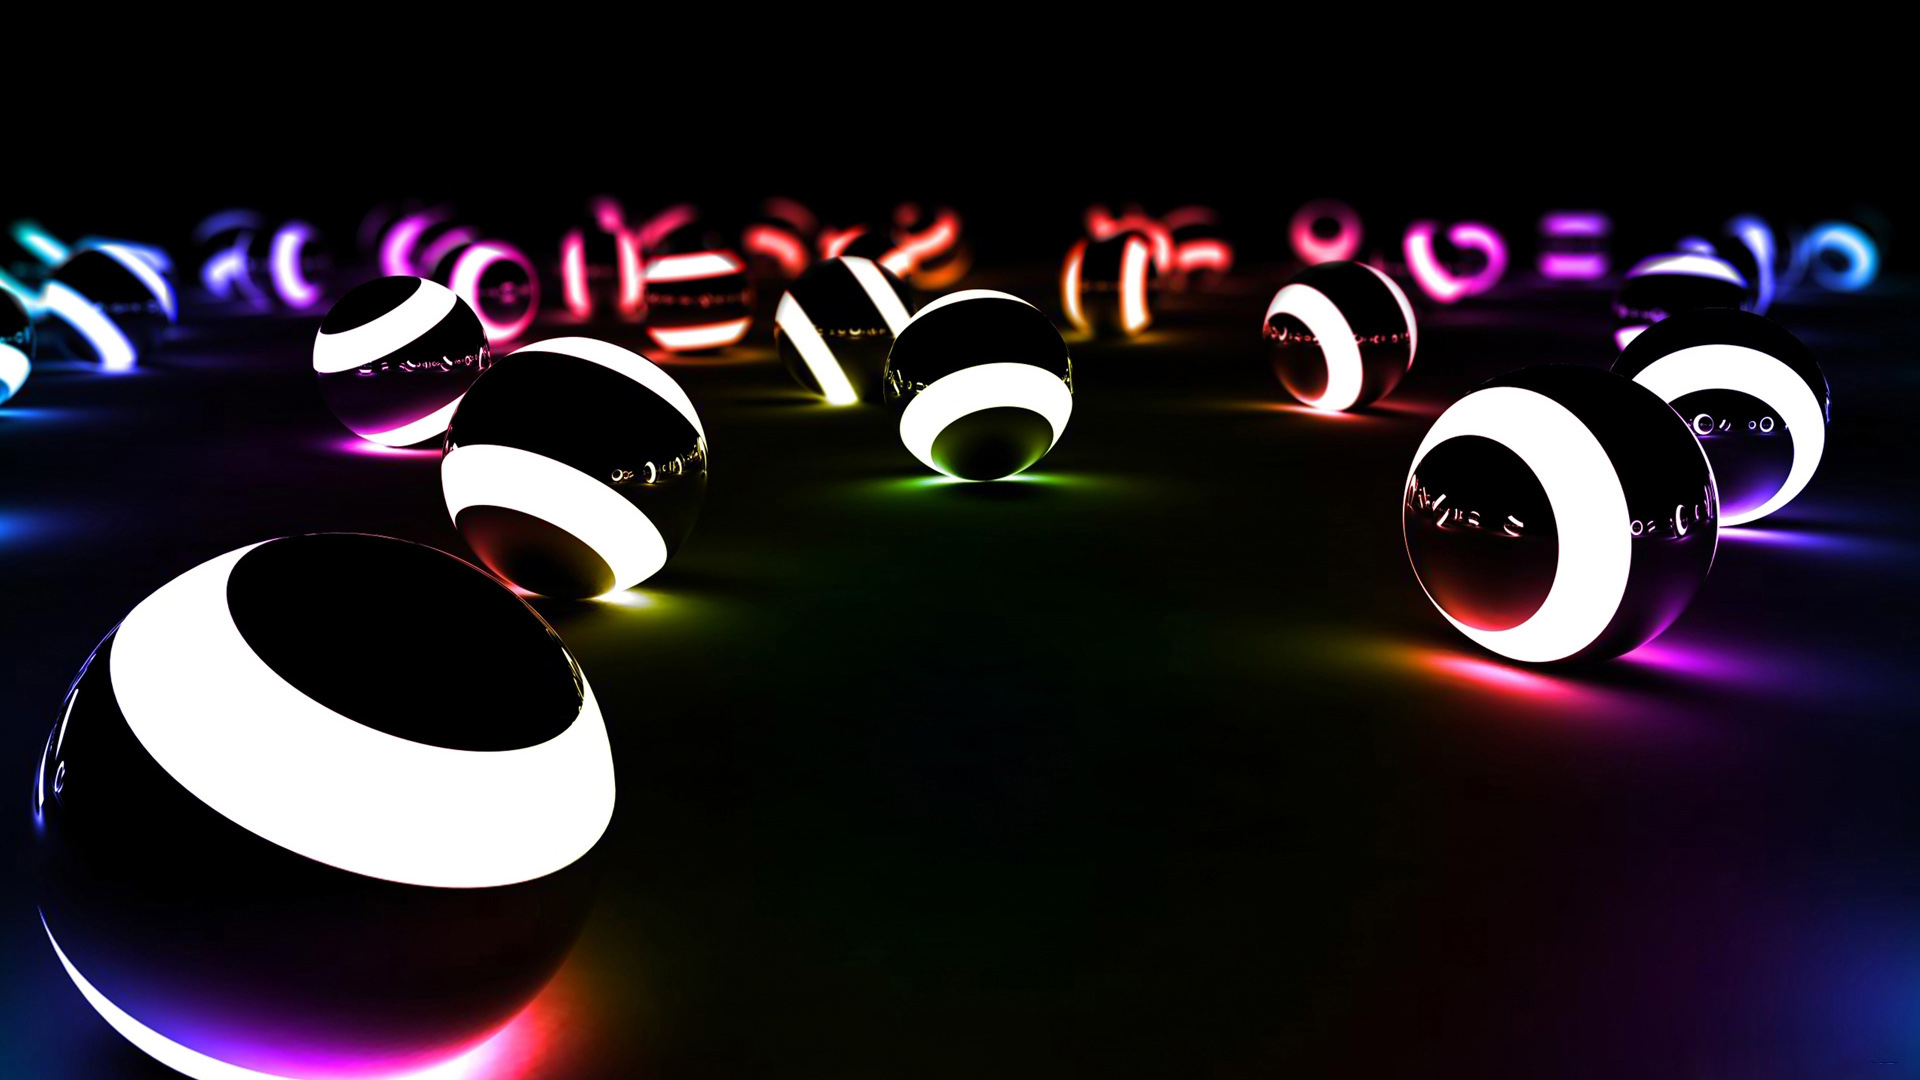 Neon Balls 3d Image Wallpaper High Resolution